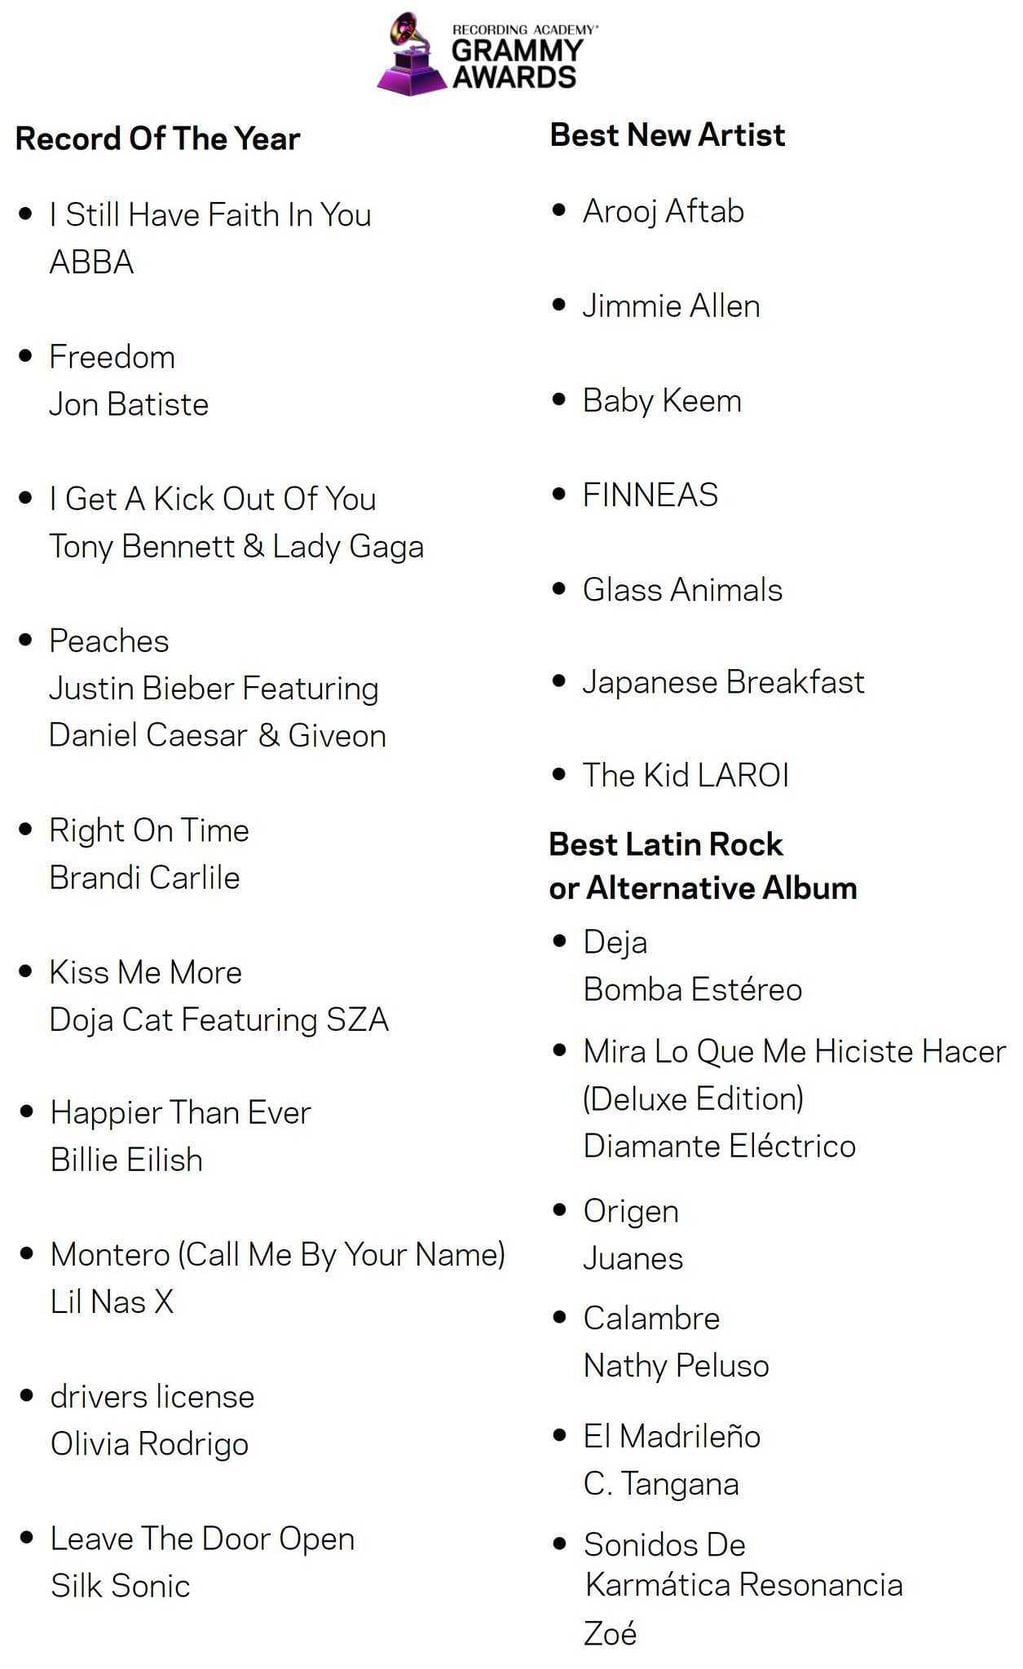 Grammy Awards 2022: Nathy Peluso, nominada a “Mejor álbum de rock latino o alternativo”.